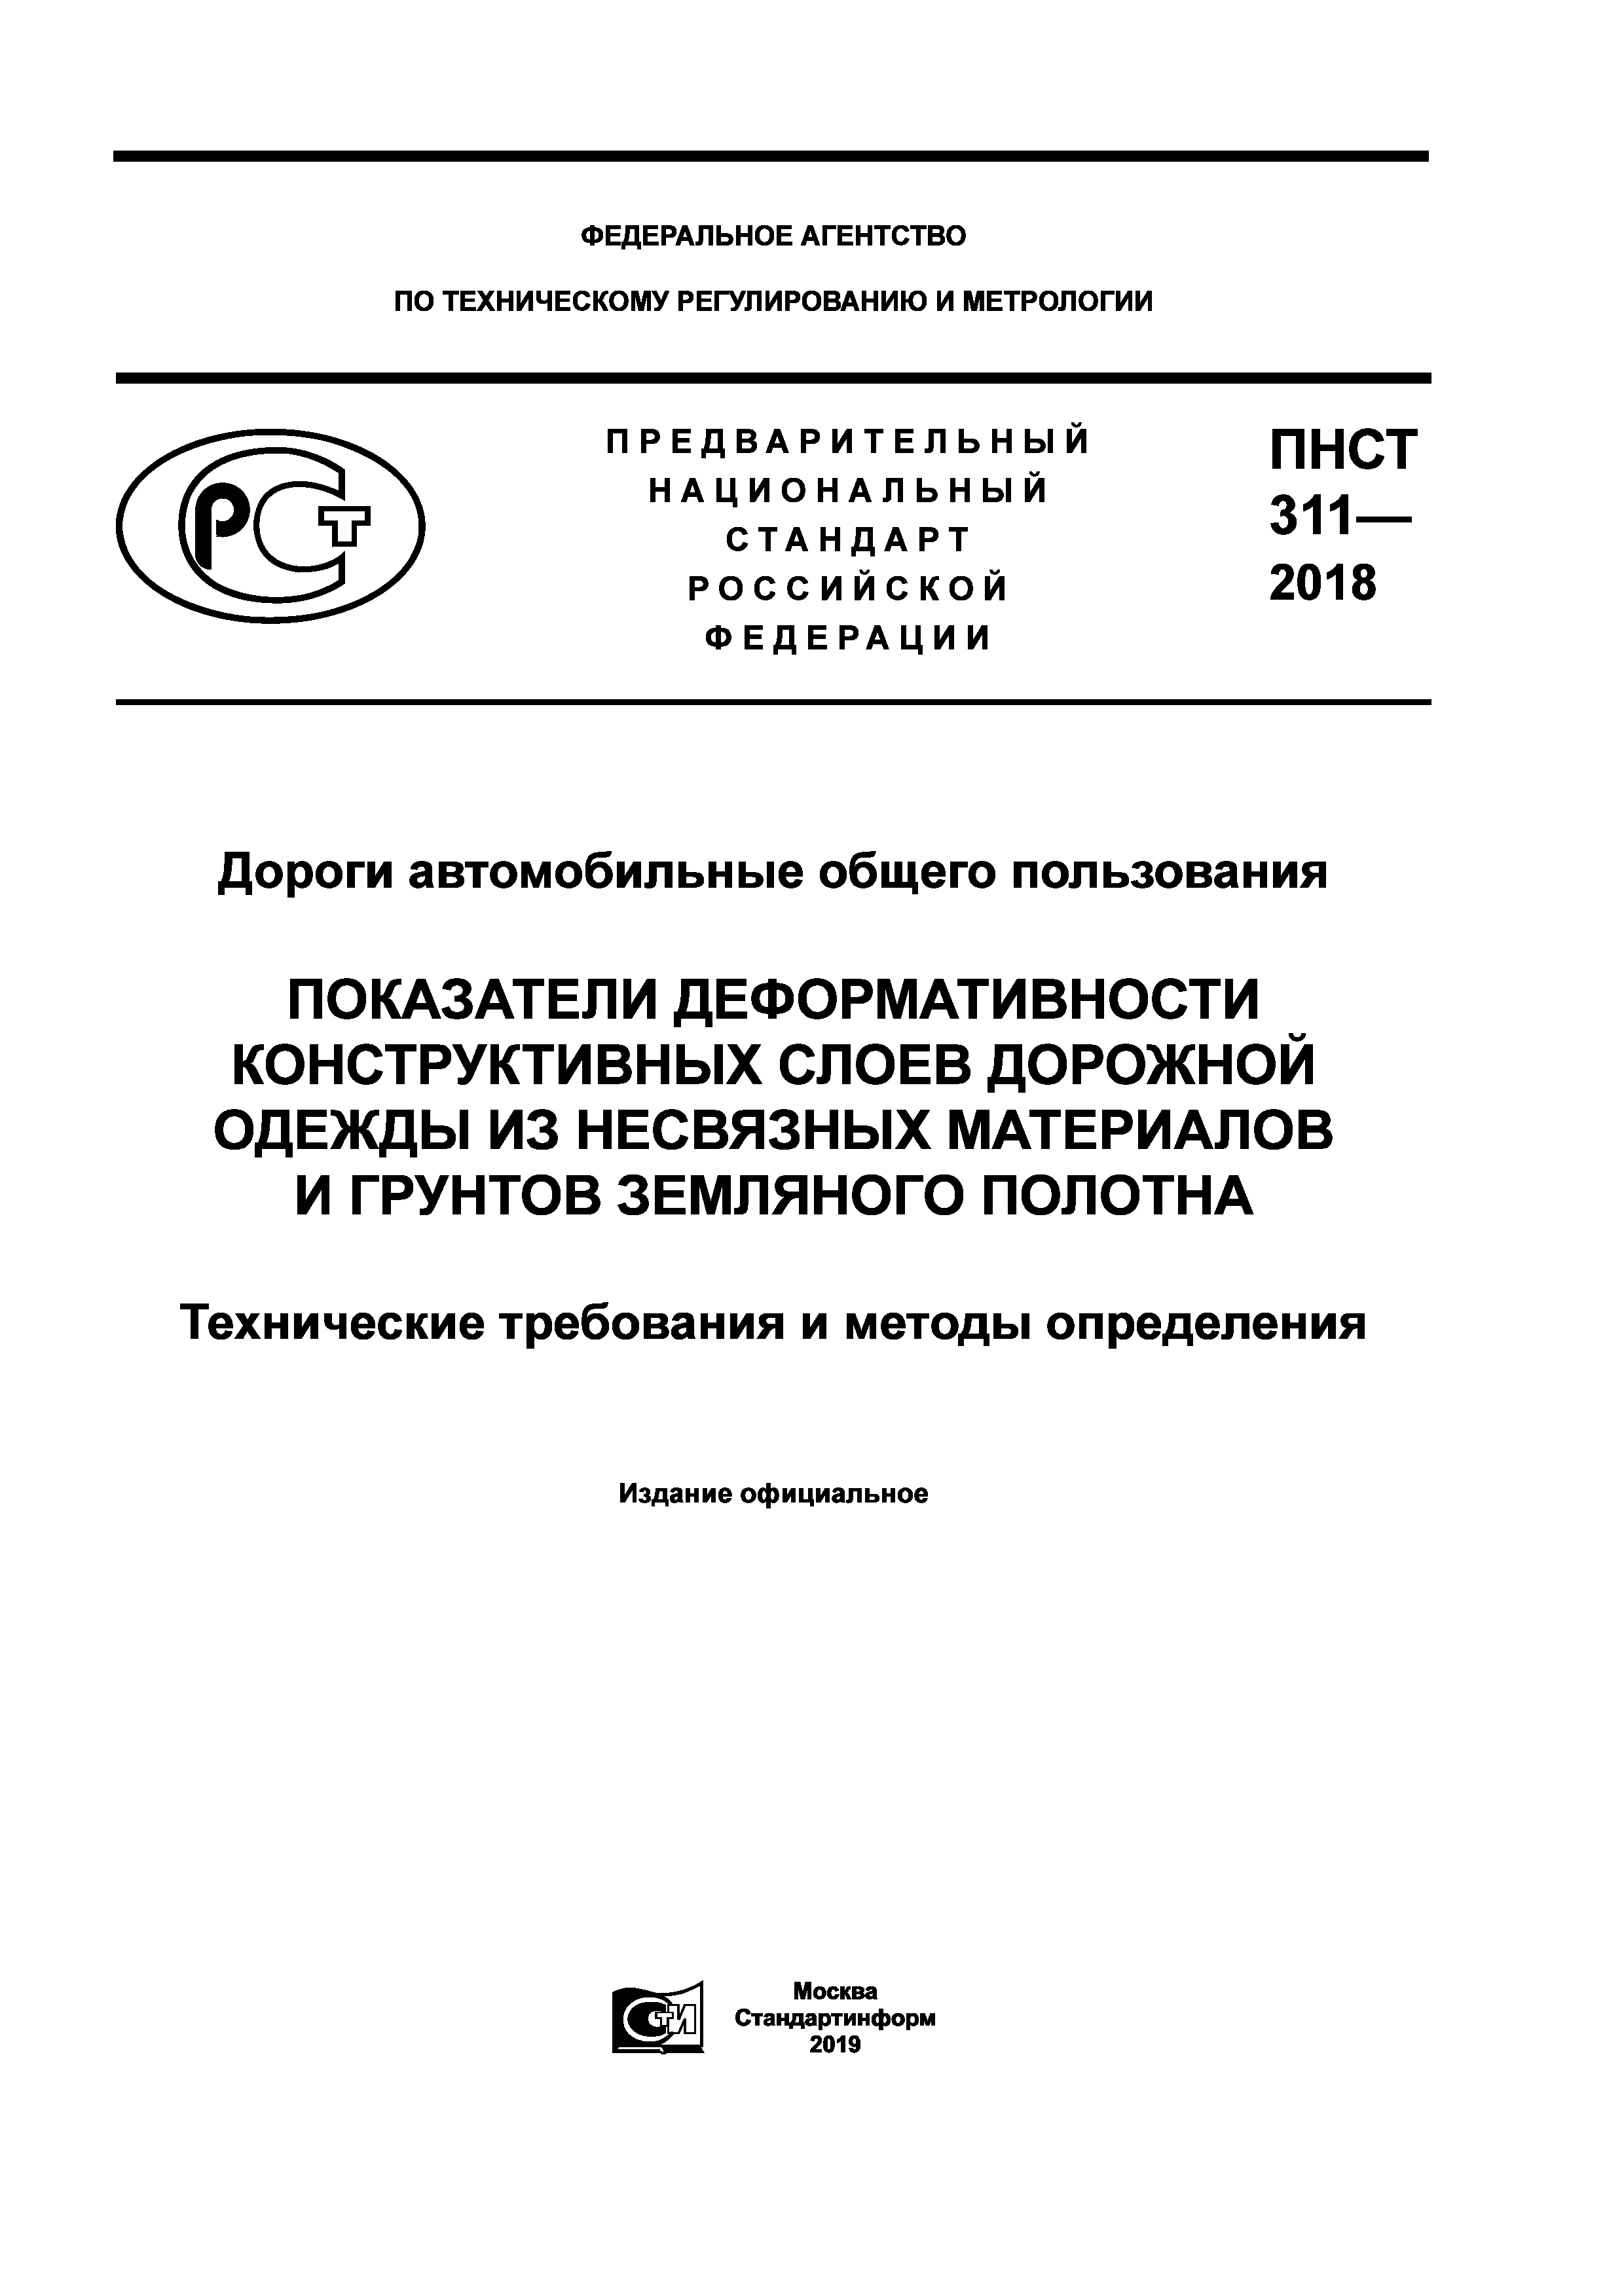 ПНСТ 311-2018